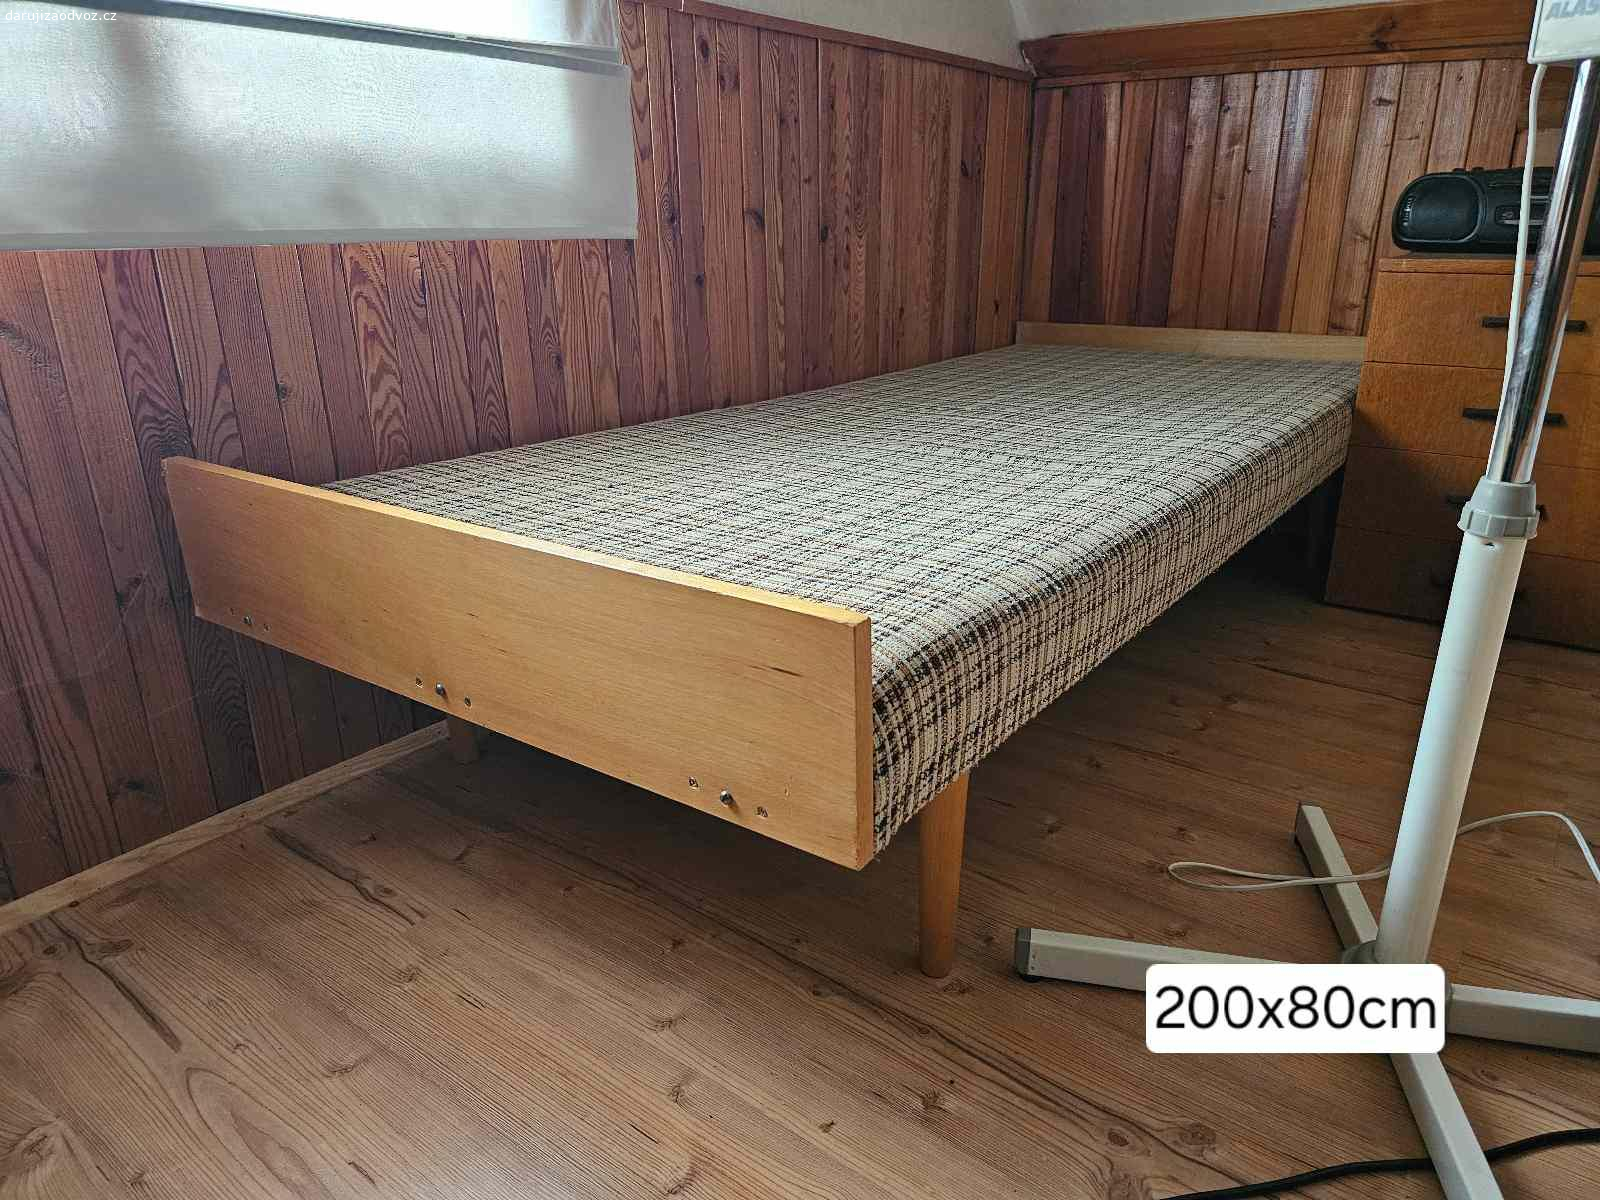 Dvě postele 80x200cm. Daruji za odvoz dvě postele.